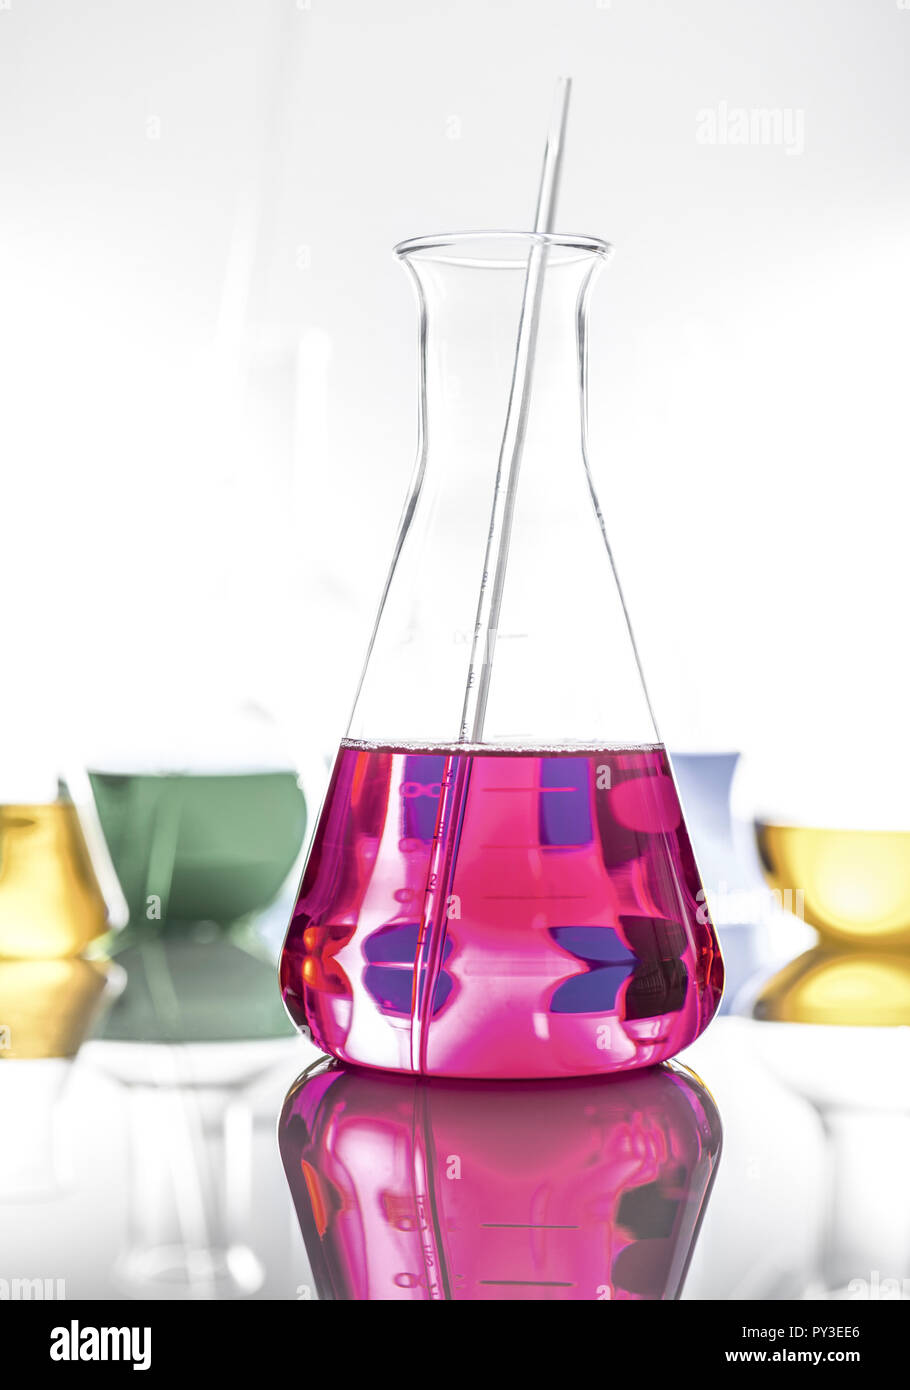 Laborgefaesse aus Glas mit farbigen Fluessigkeiten Stock Photo